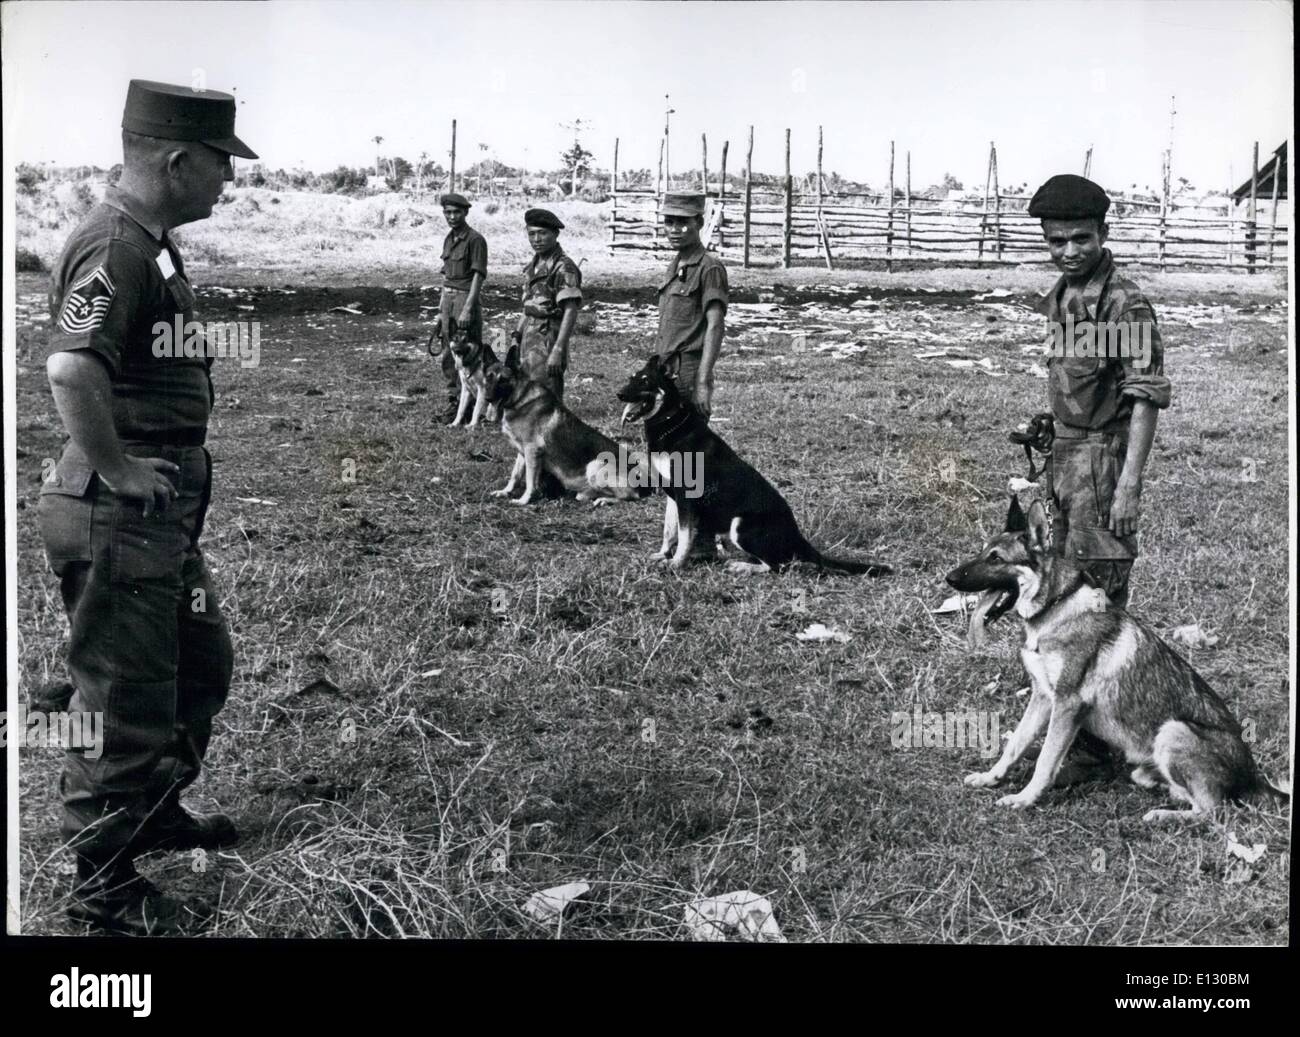 Le 26 février 2012 - US Air Force M/Segt Johnie Pate, un des experts de la formation de chien inspecte les chiens sur le défilé dans le centre de formation près de Saigon. Banque D'Images